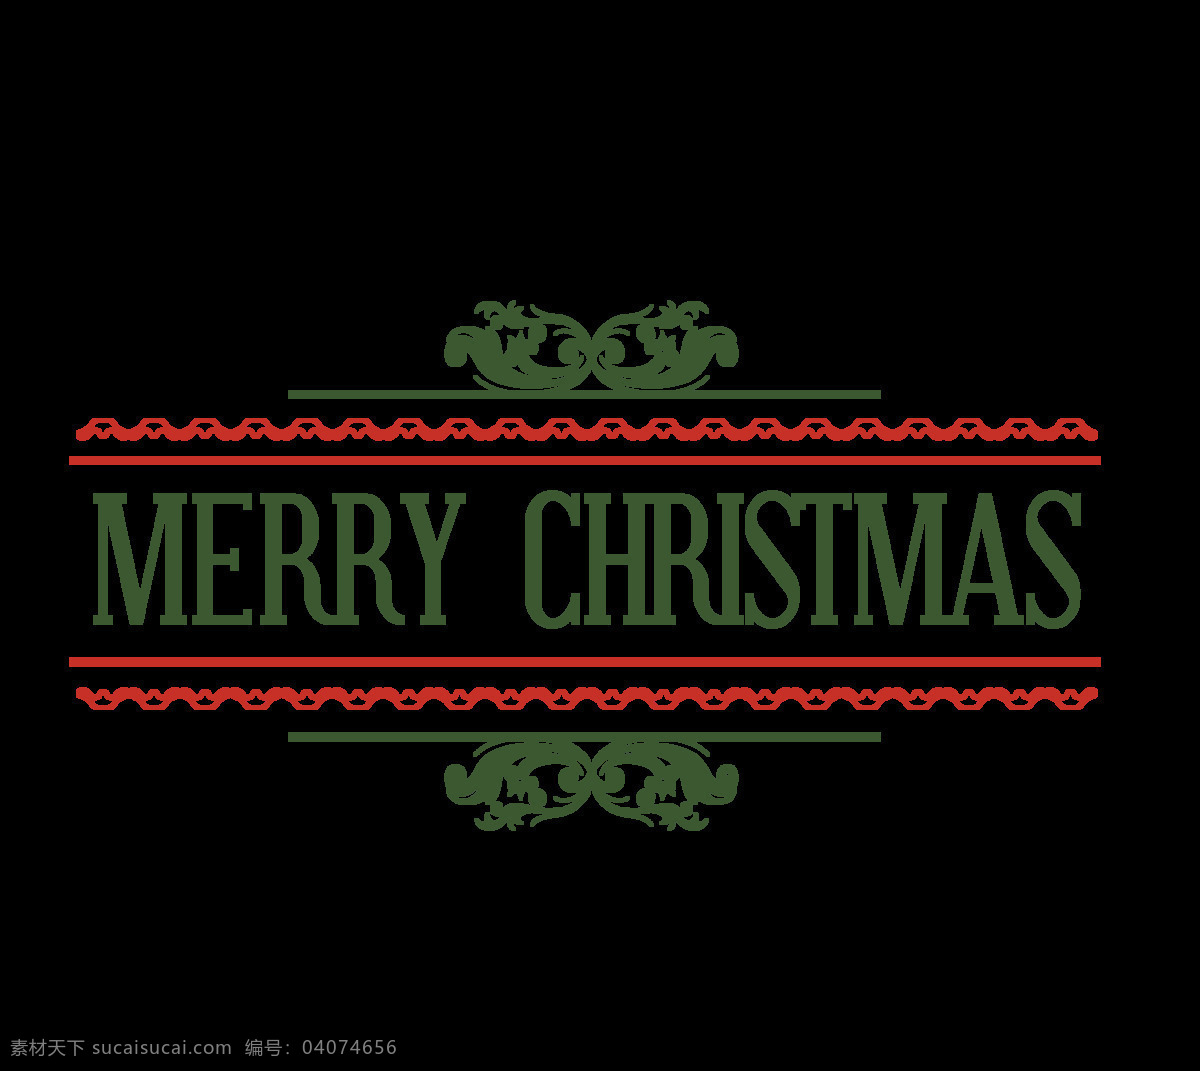 绿色 圣诞 字体 元素 彩色字体 创意字体素材 节日字体 卡通元素 平安夜 圣诞素材 圣诞透明元素 圣诞装扮 圣诞字体 新年快乐 艺术字体 英文元素 元旦快乐